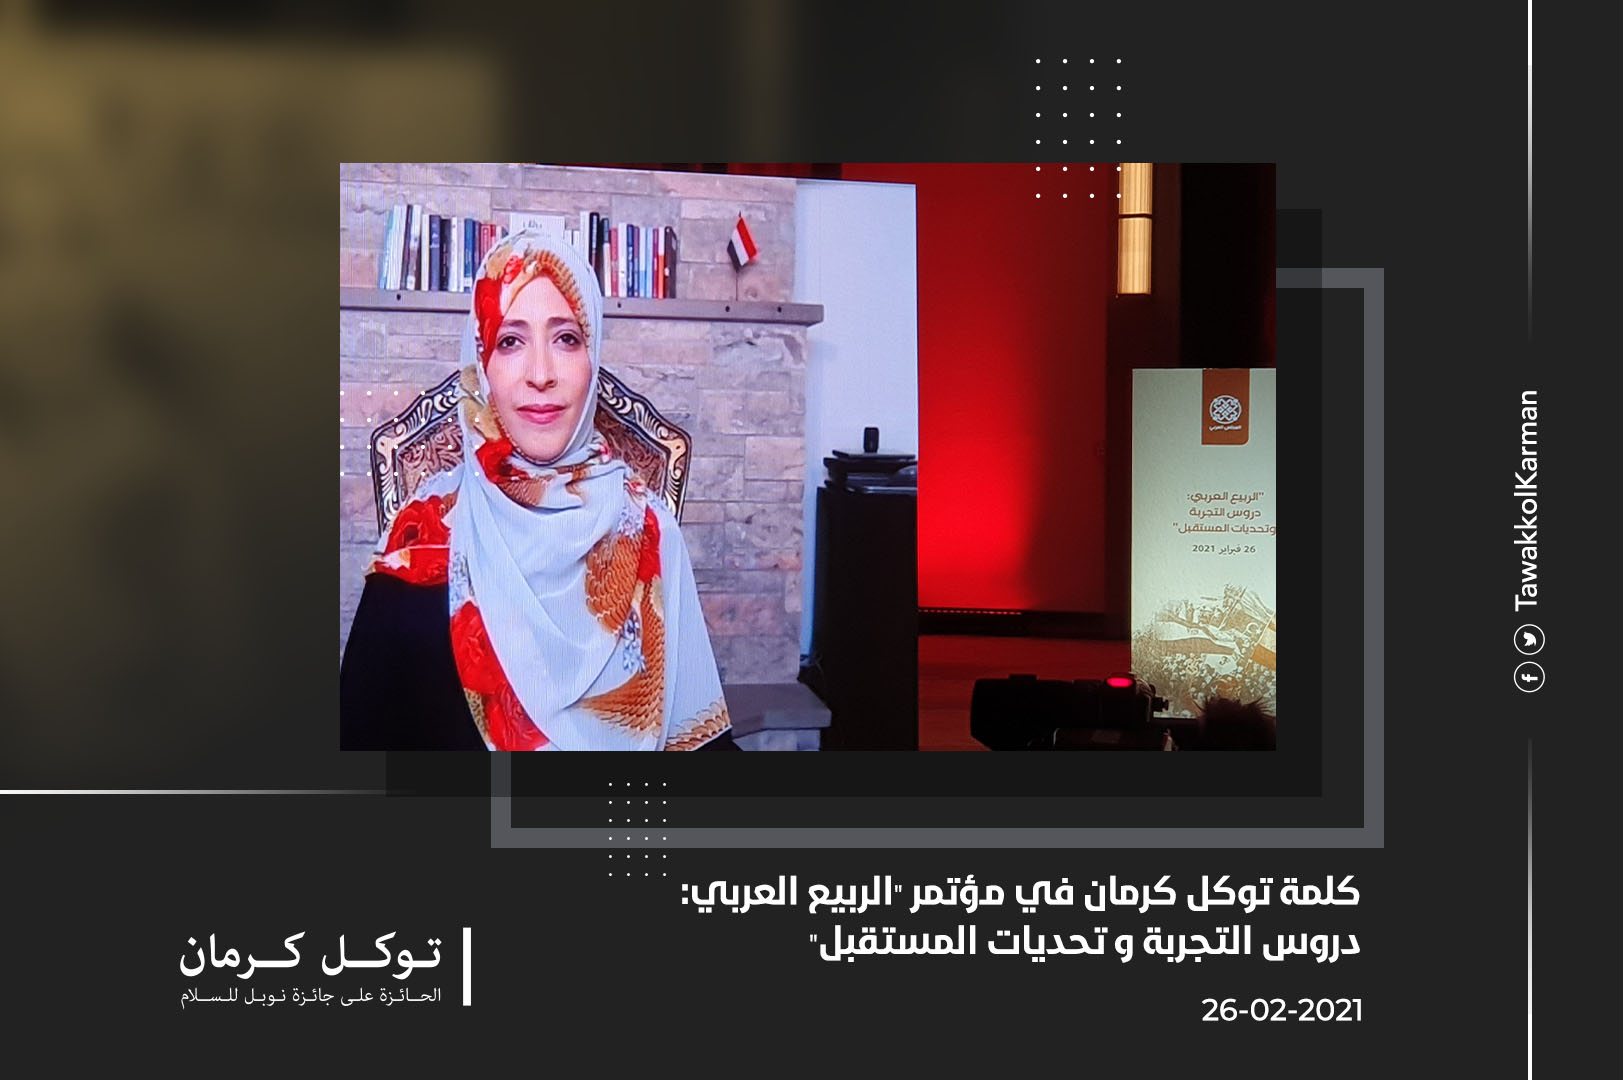 كلمة توكل كرمان في مؤتمر الربيع العربي: دروس التجربة وتحديات المستقبل